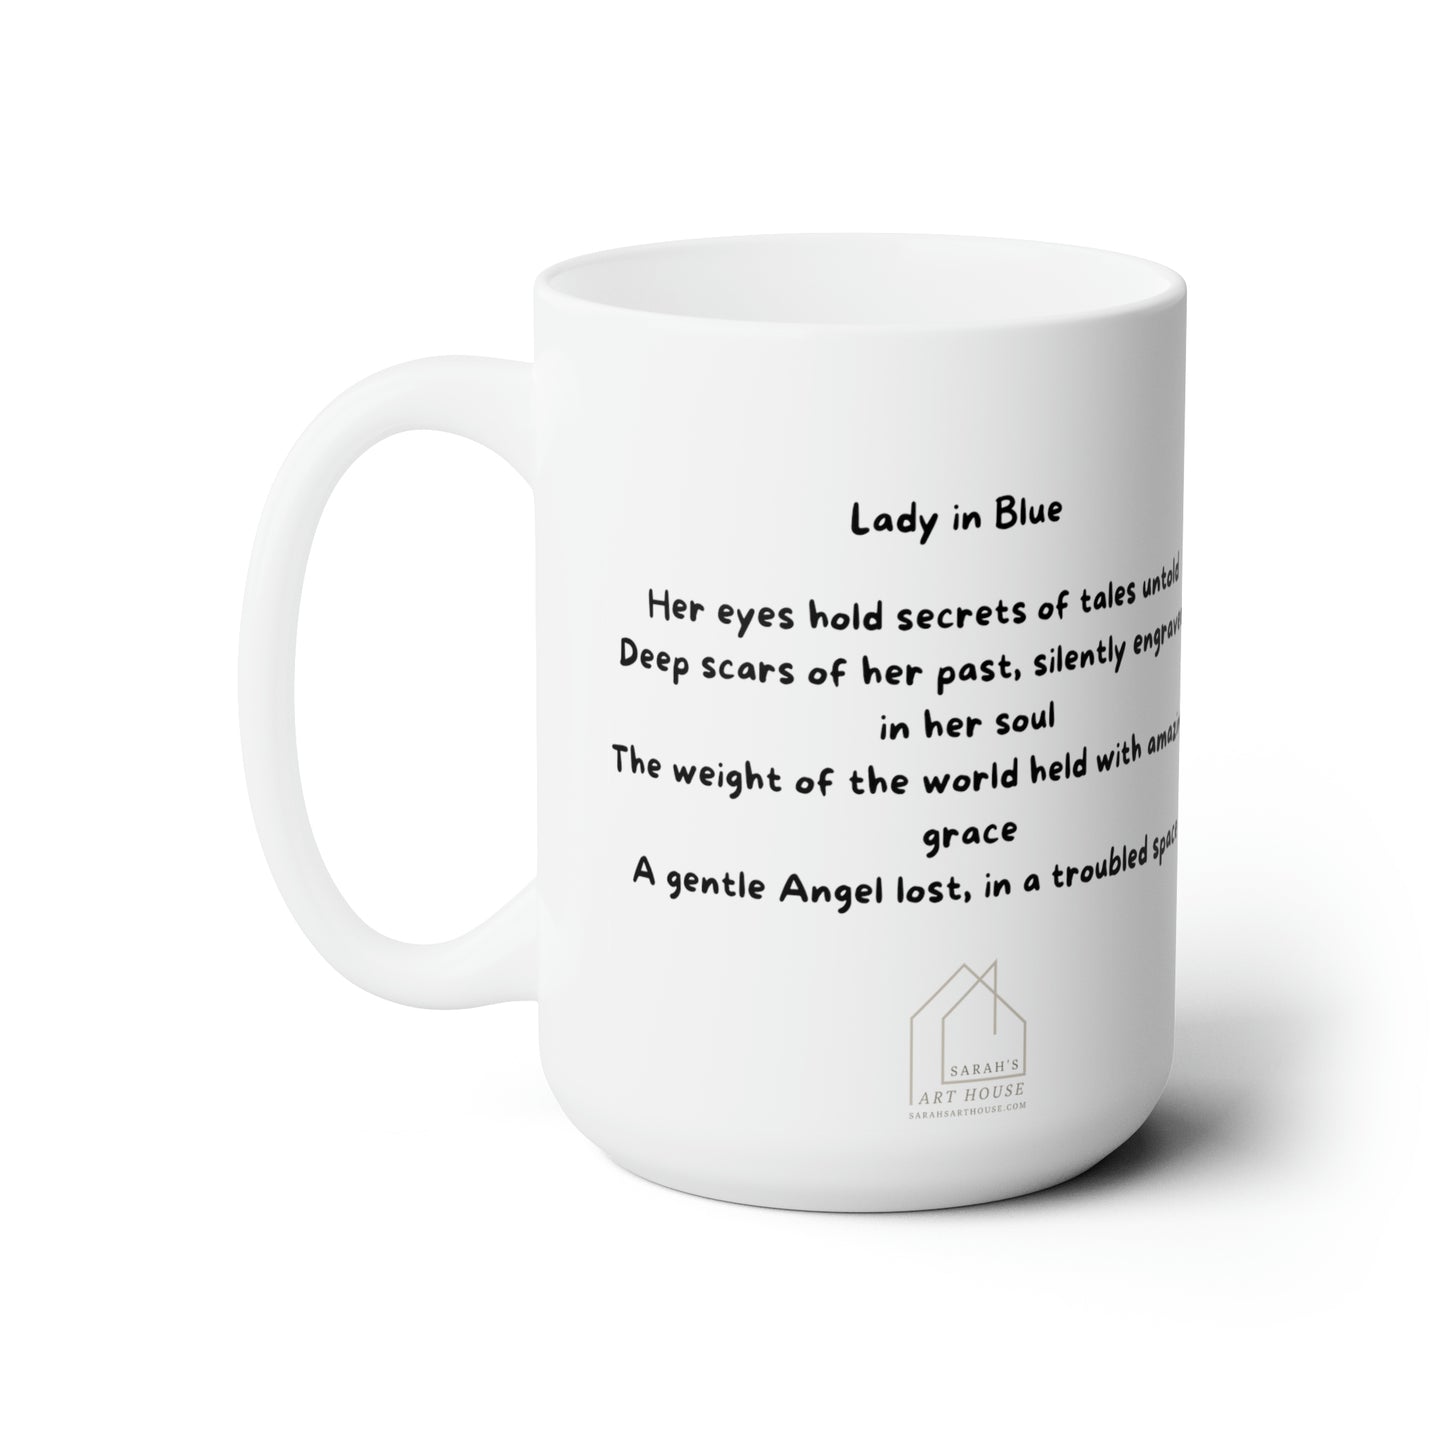 Lady in Blue - Ceramic Mug 15oz - Coffee Mug with Poem